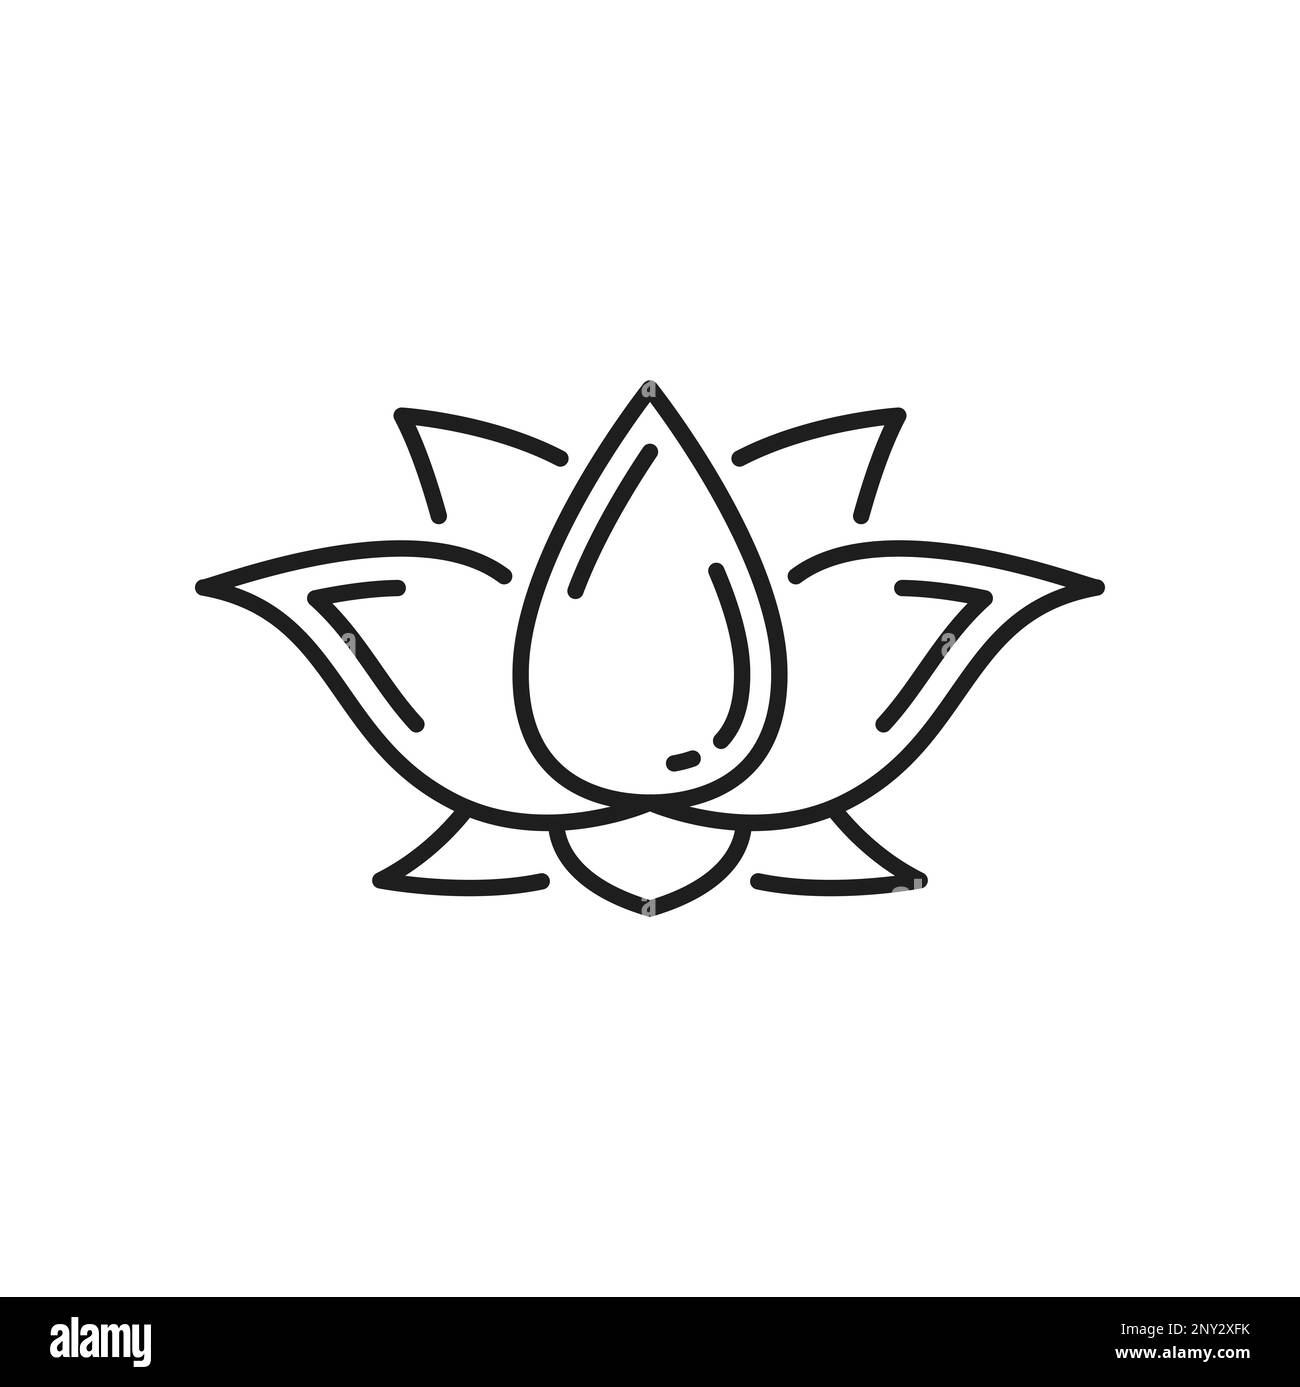 Bouddhisme religion symbole lotus, signe bouddhiste de méditation et zen, icône vecteur. Bouddhisme tibétain Dharma et illumination spirituelle ou chakra symbole de la fleur de lotus Padma Illustration de Vecteur